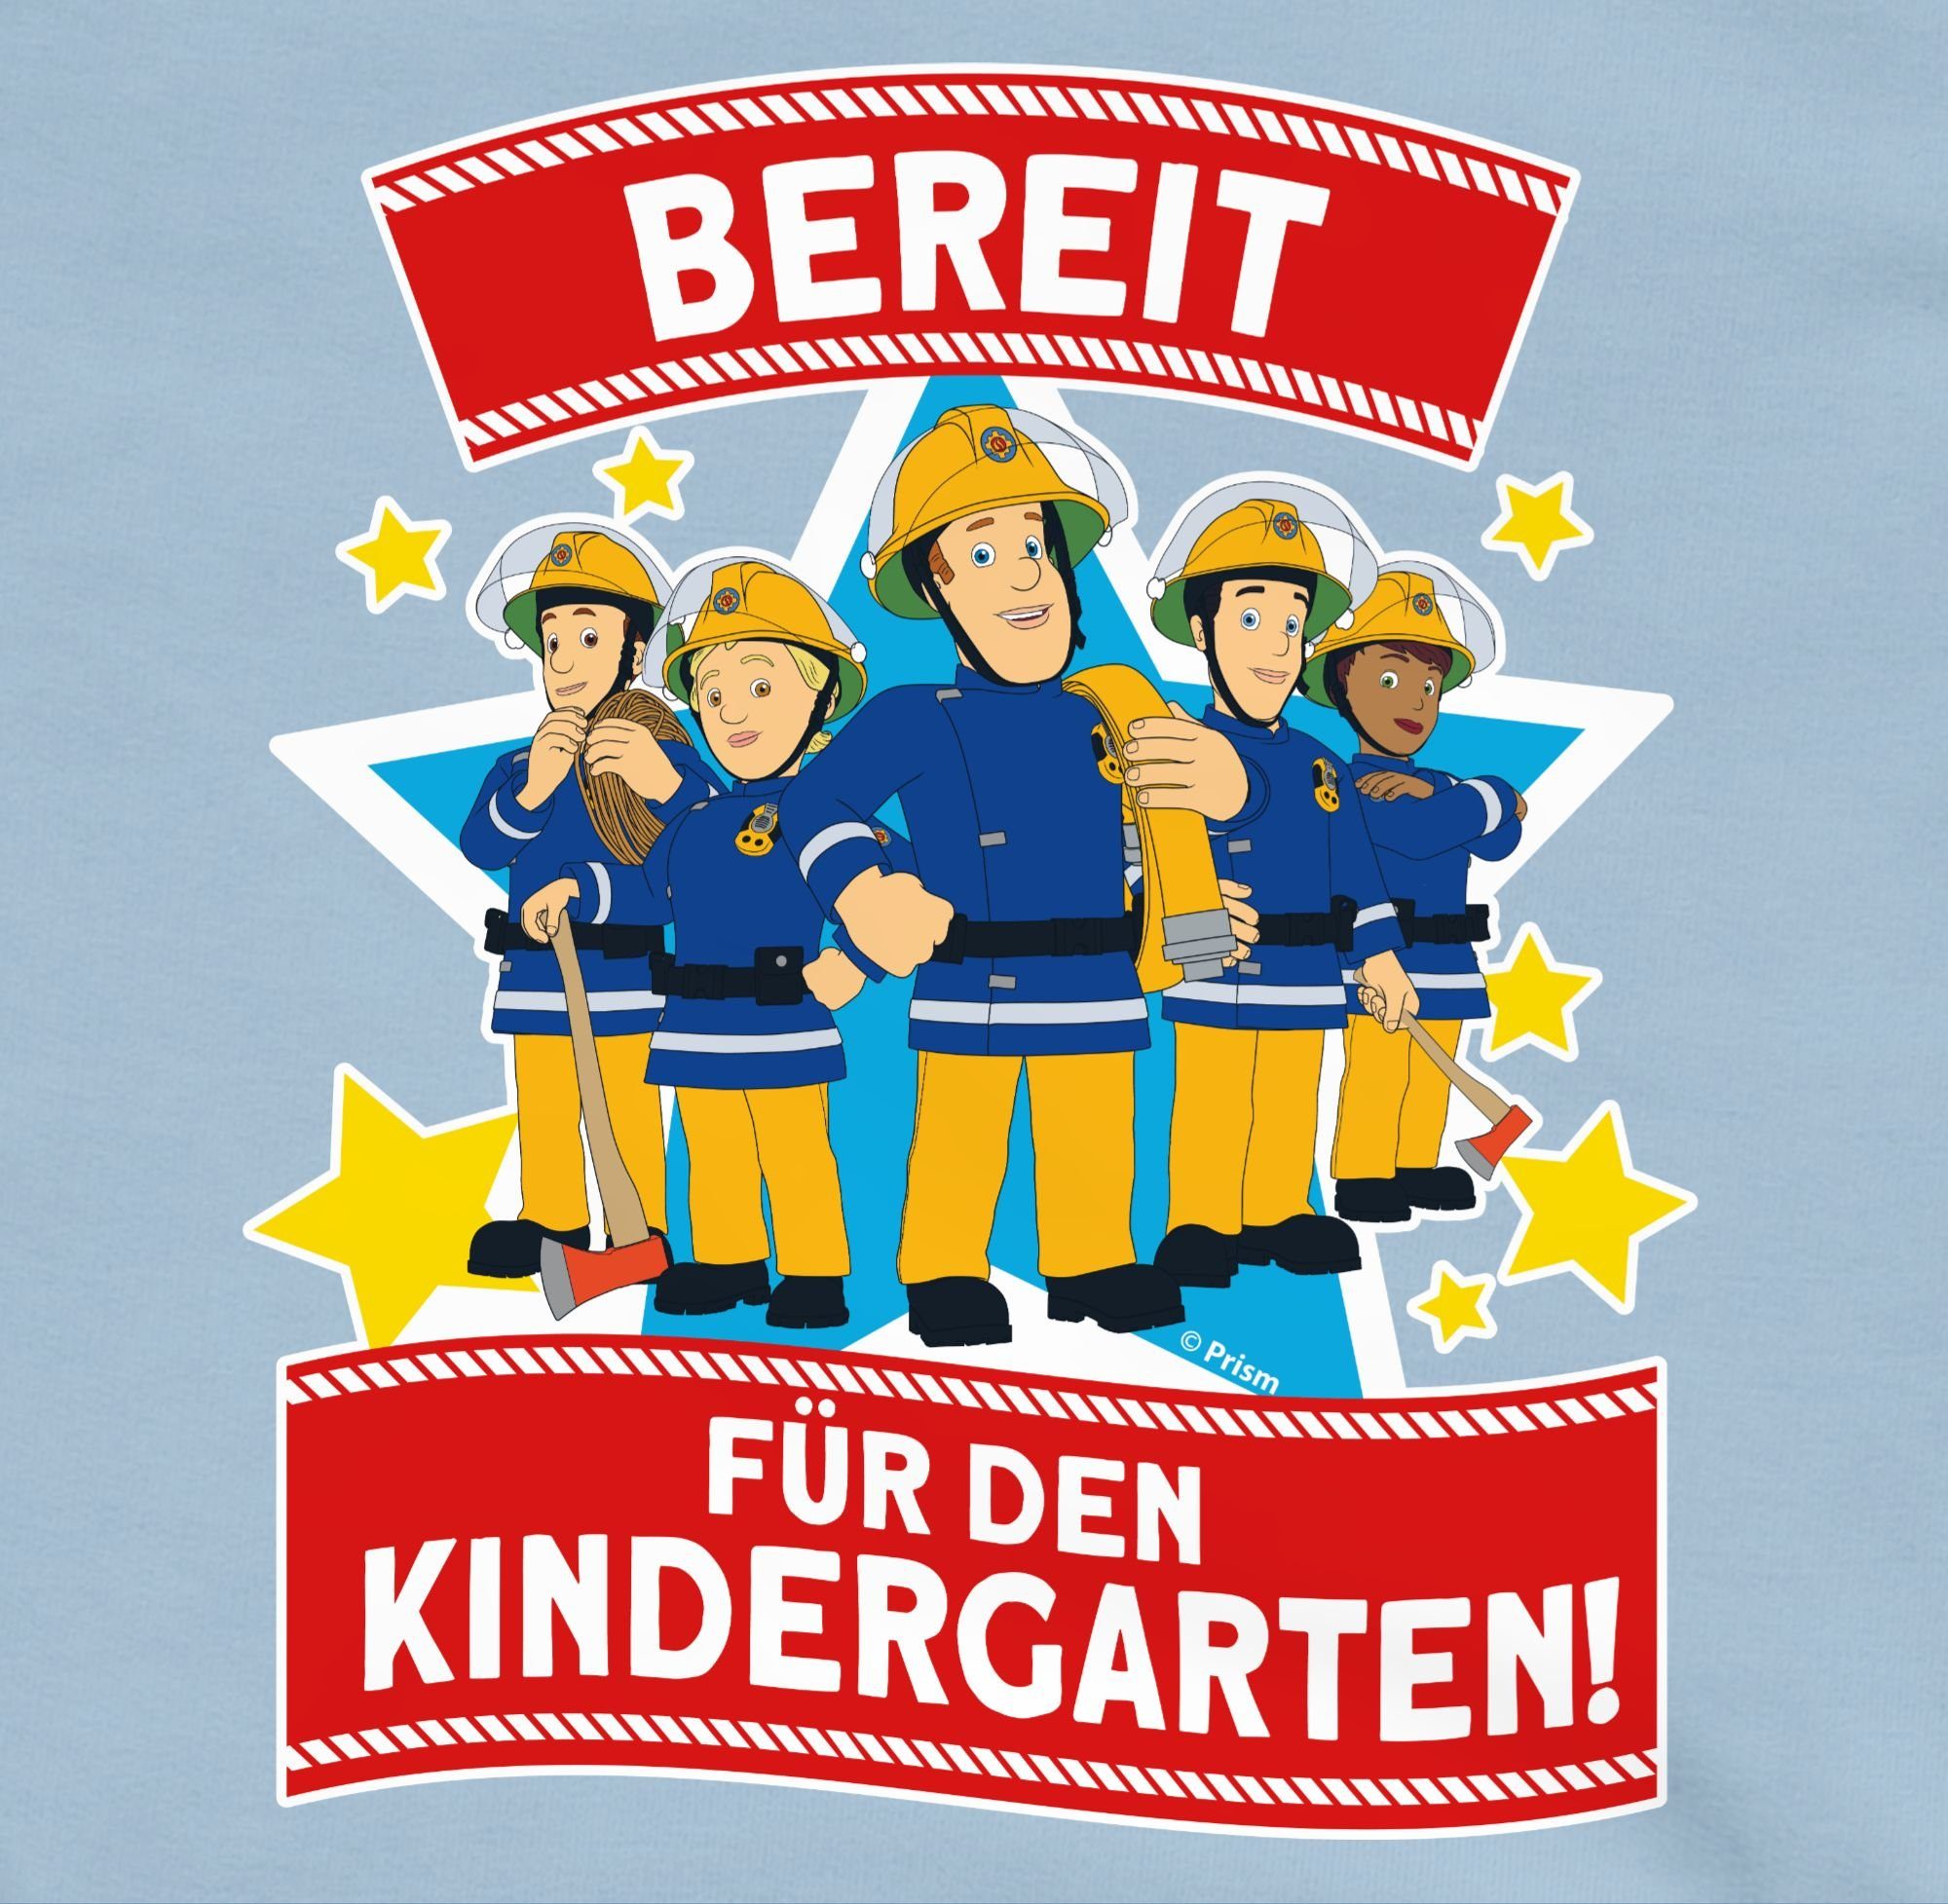 Sam - & Feuerwehrmann Kindergarten! Sweatshirt 3 Hellblau Shirtracer Mädchen für den Sam Bereit Team